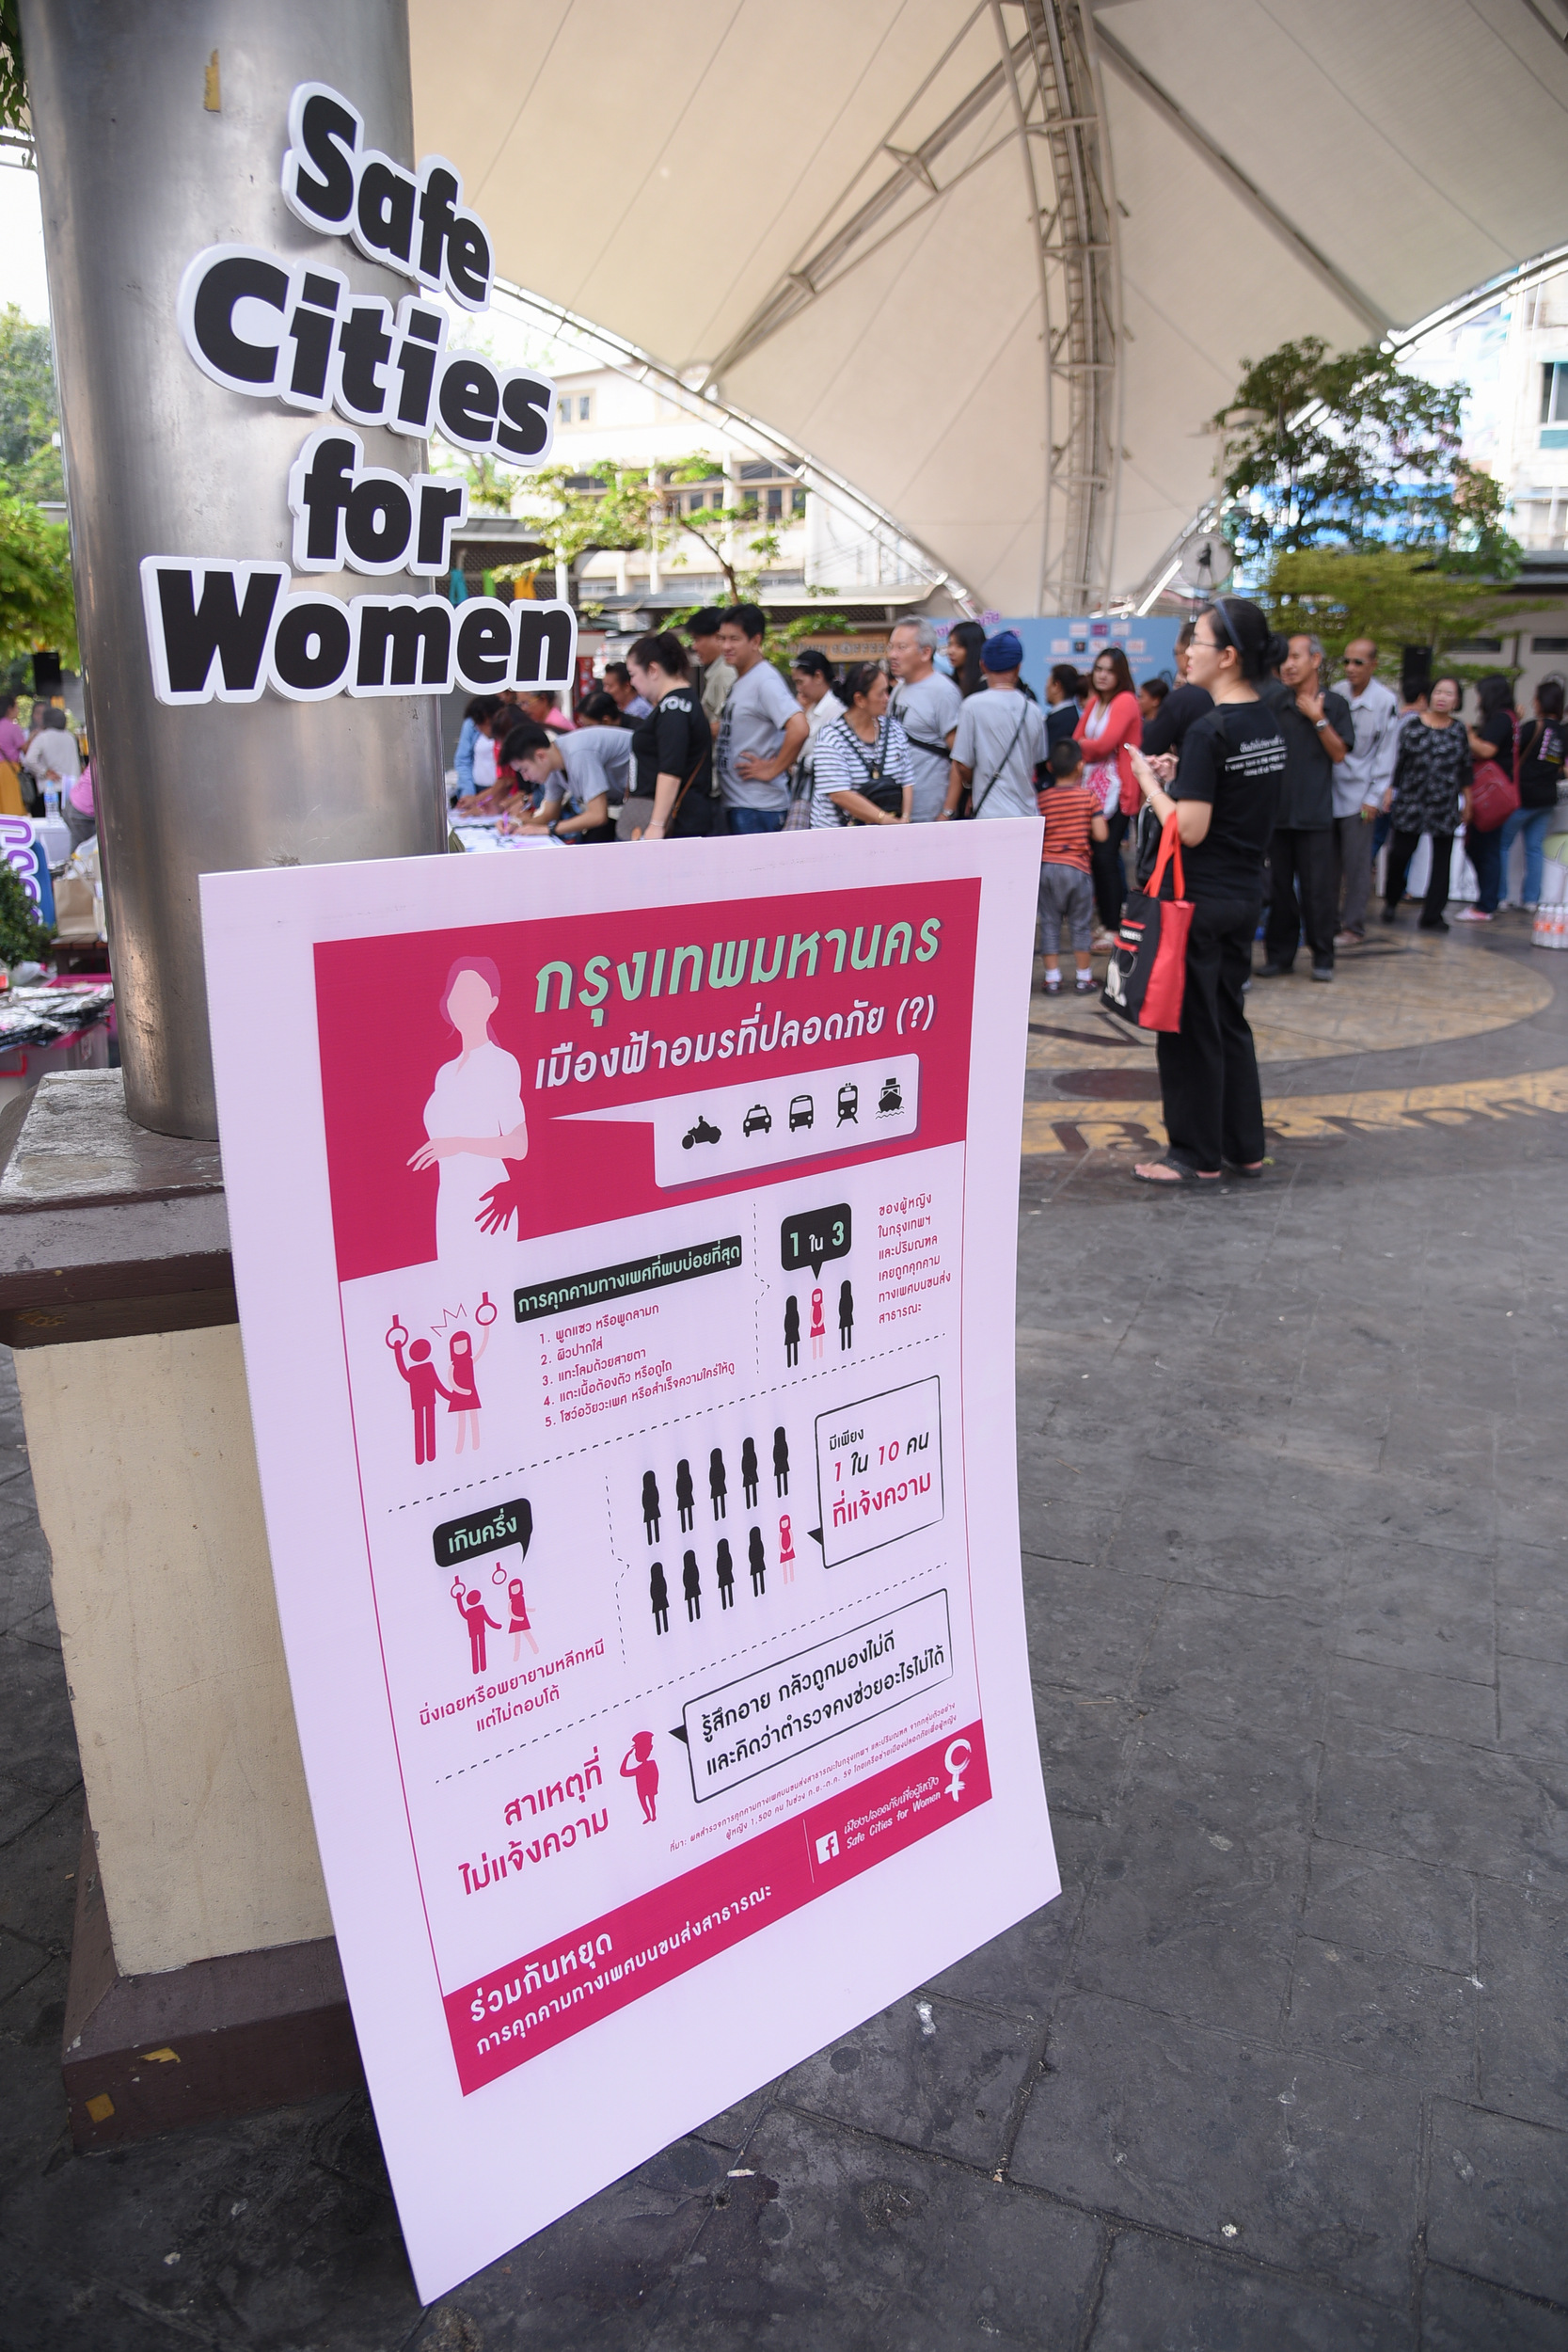 ผู้หญิง 1 ใน 3 เคยถูกคุกคามบนรถสาธารณะ thaihealth